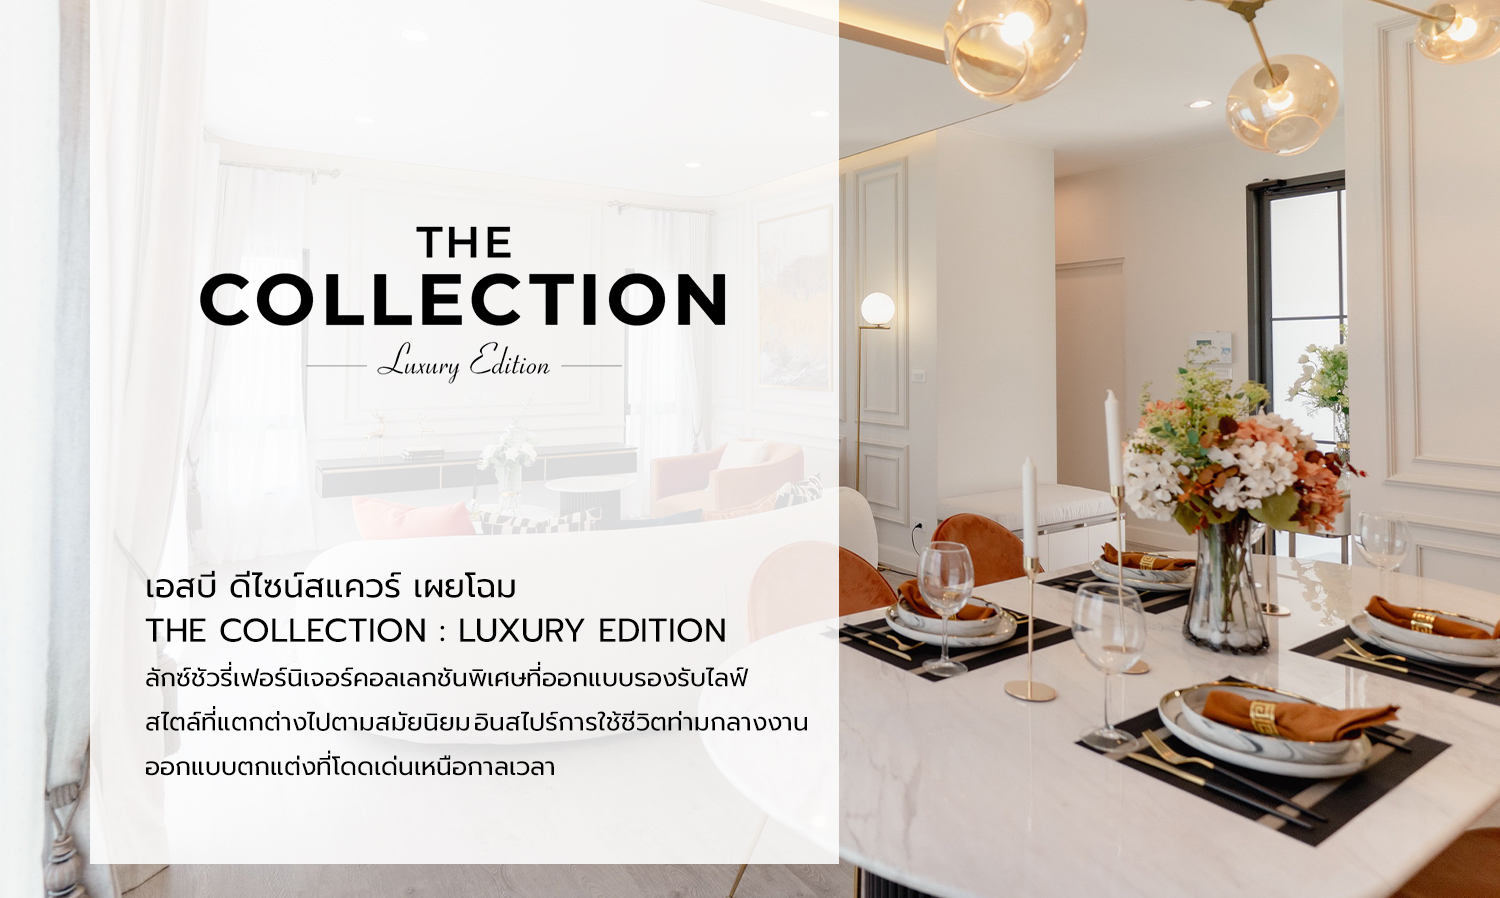 เอสบี ดีไซน์สแควร์ เผยโฉม The Collection: Luxury Edition ลักซ์ชัวรี่เฟอร์นิเจอร์คอลเลกชันพิเศษที่ออกแบบรองรับไลฟ์สไตล์ที่แตกต่างไปตามสมัยนิยม